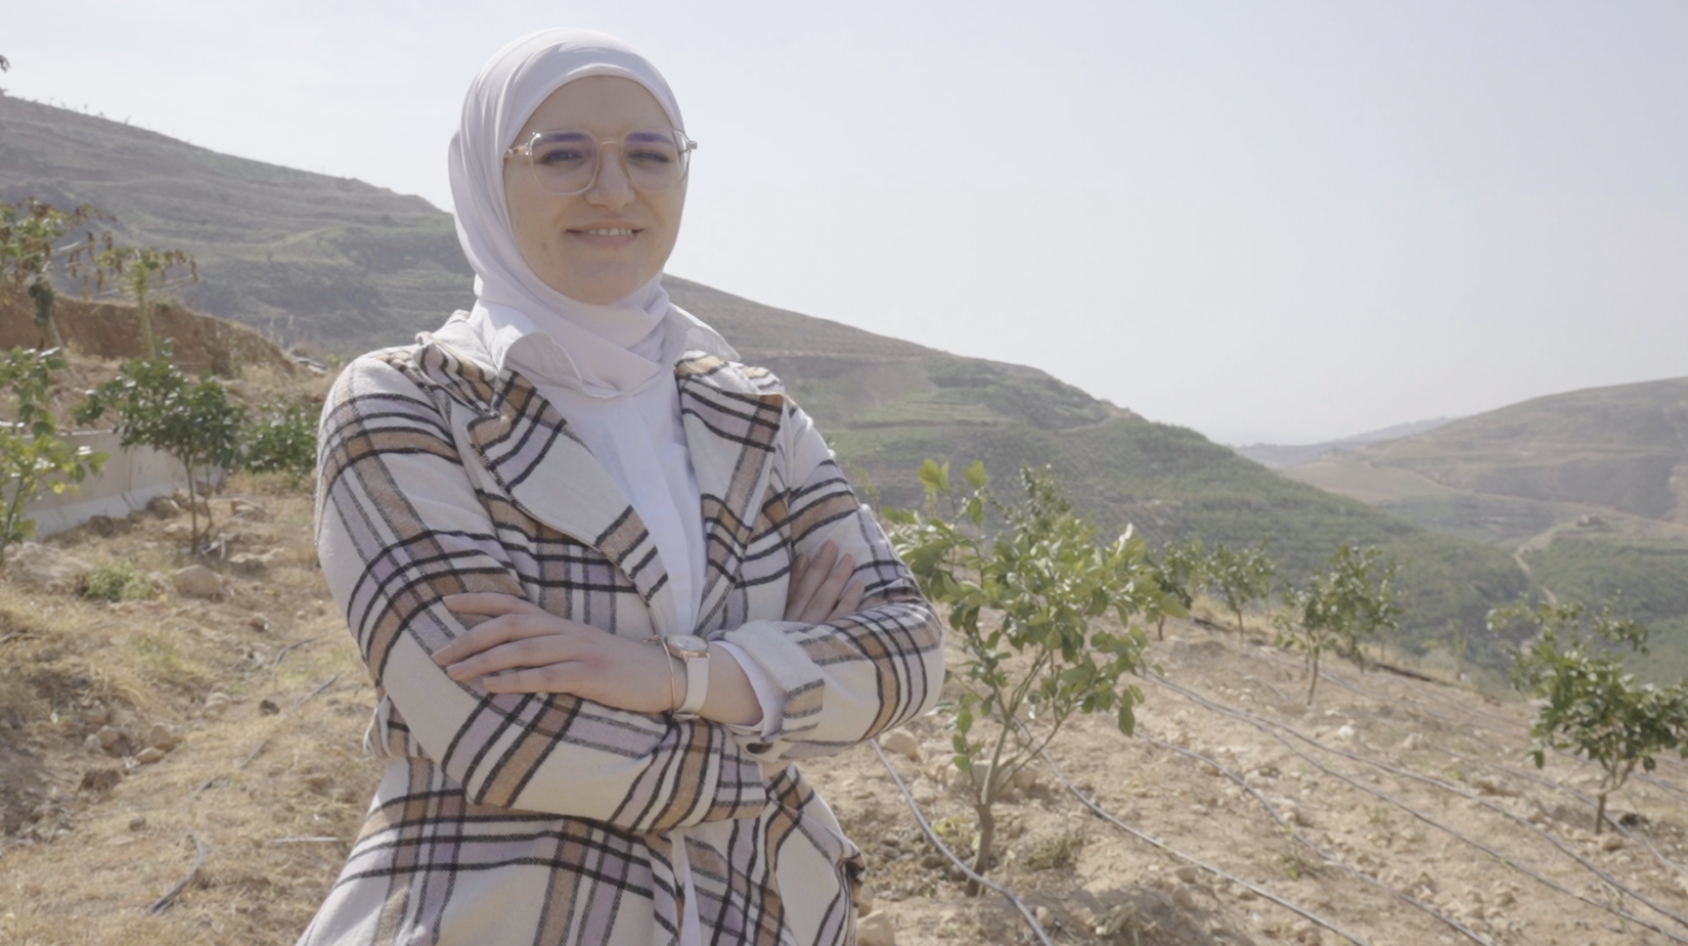 Jordanian woman entrepreneur